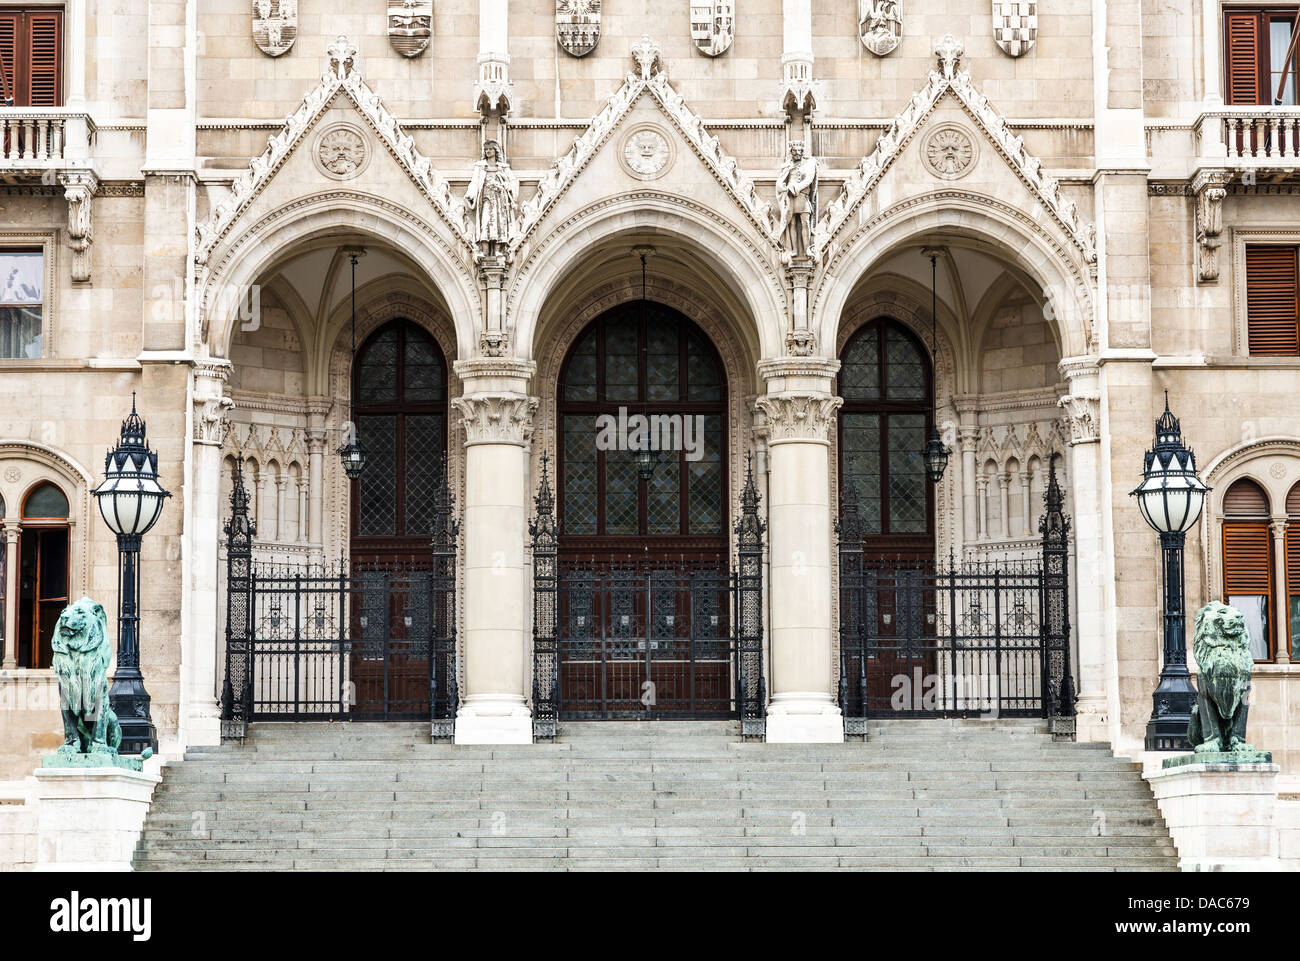 Orszaghaz, Parlamento ungherese edificio è la sede dell'Assemblea nazionale di Ungheria, costruita in stile gotico in stile revival. Budapes Foto Stock